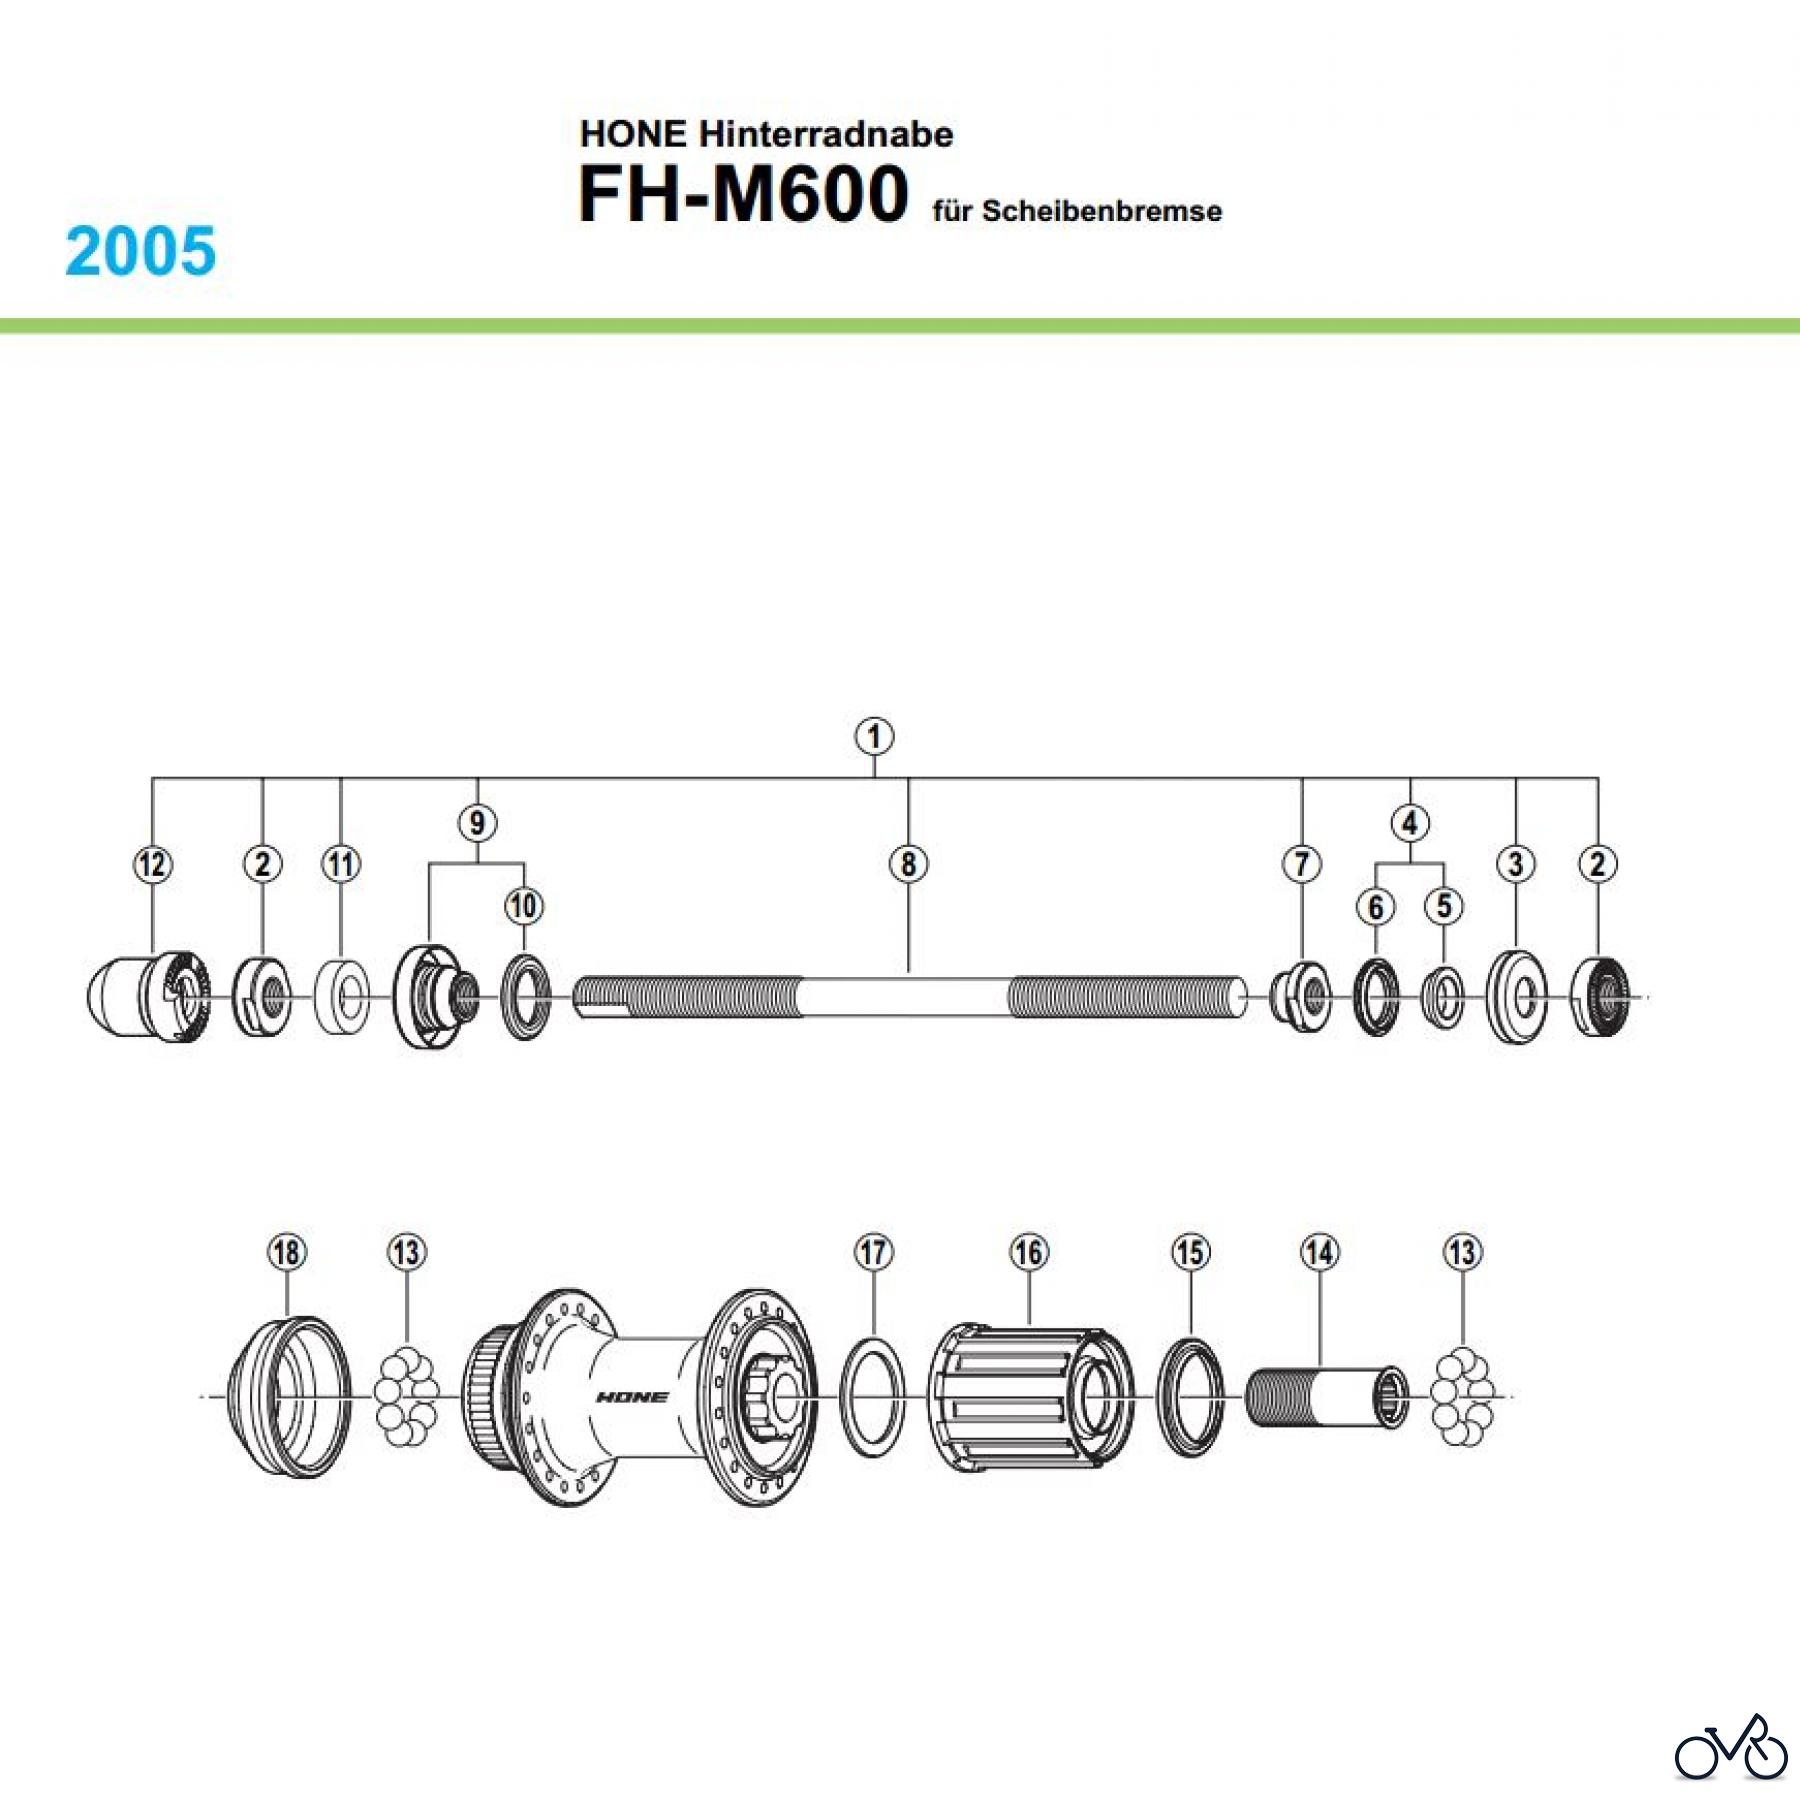  Shimano FH Free Hub - Freilaufnabe FH-M600, 2005 HONE Hinterradnabe für Scheibenbremse